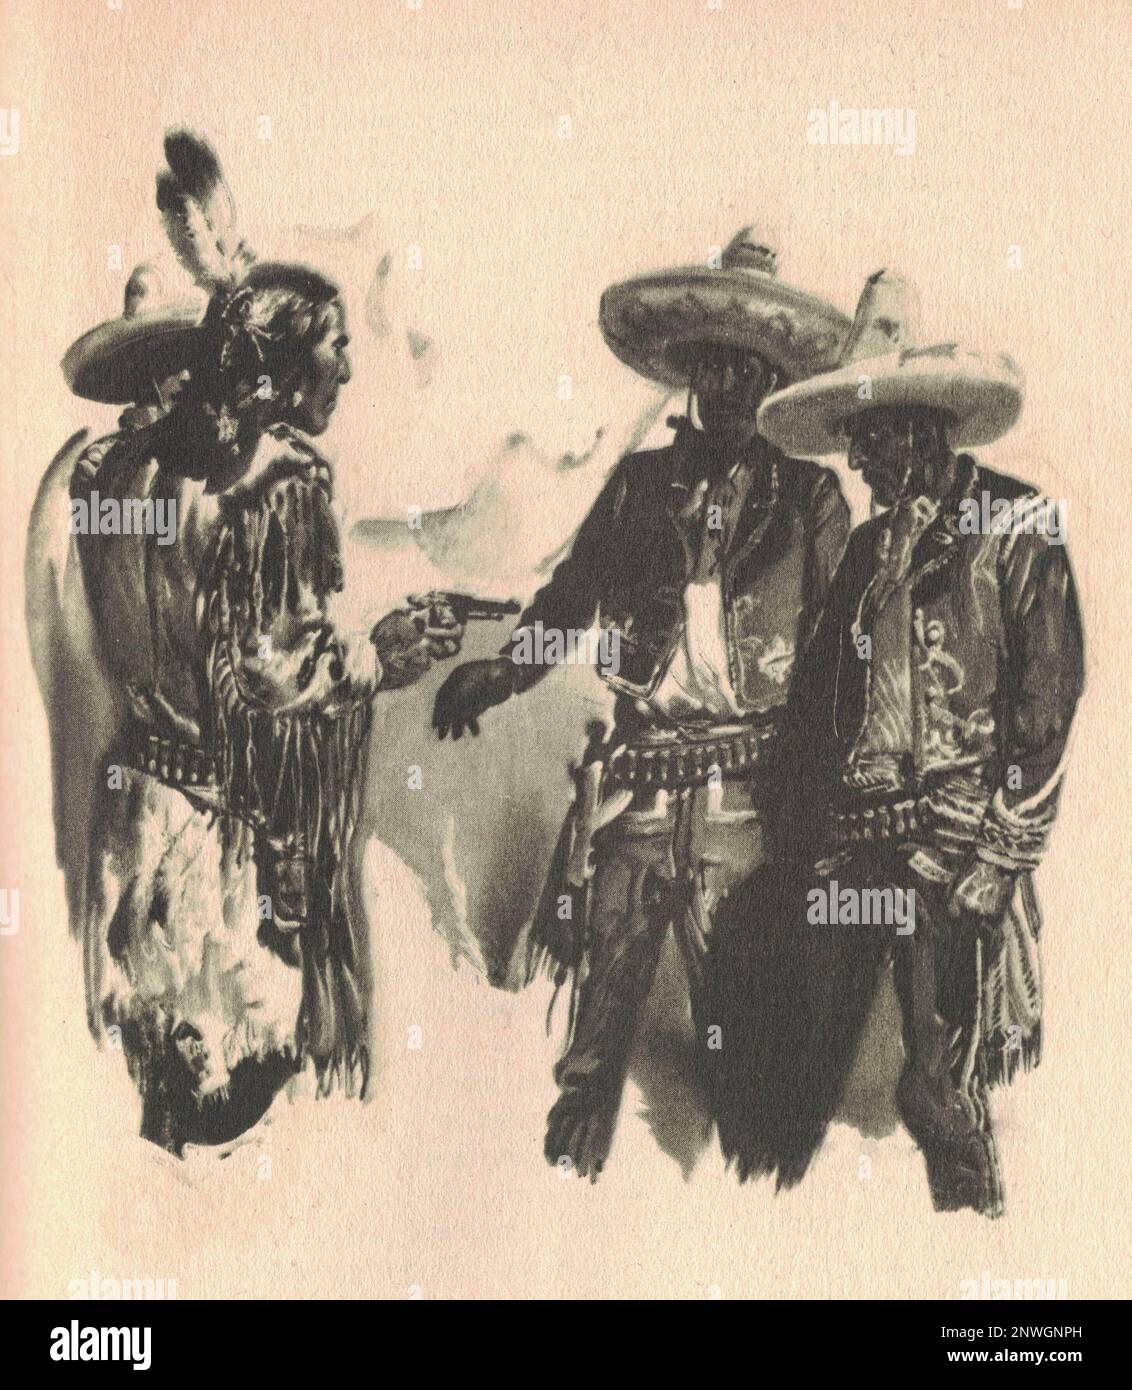 L'illustrazione in bianco e nero mostra un indiano americano che punta una pistola a due messicani. Il disegno mostra la vita nel Vecchio West. L'immagine vintage in bianco e nero mostra la vita di avventura nel secolo precedente. Foto Stock